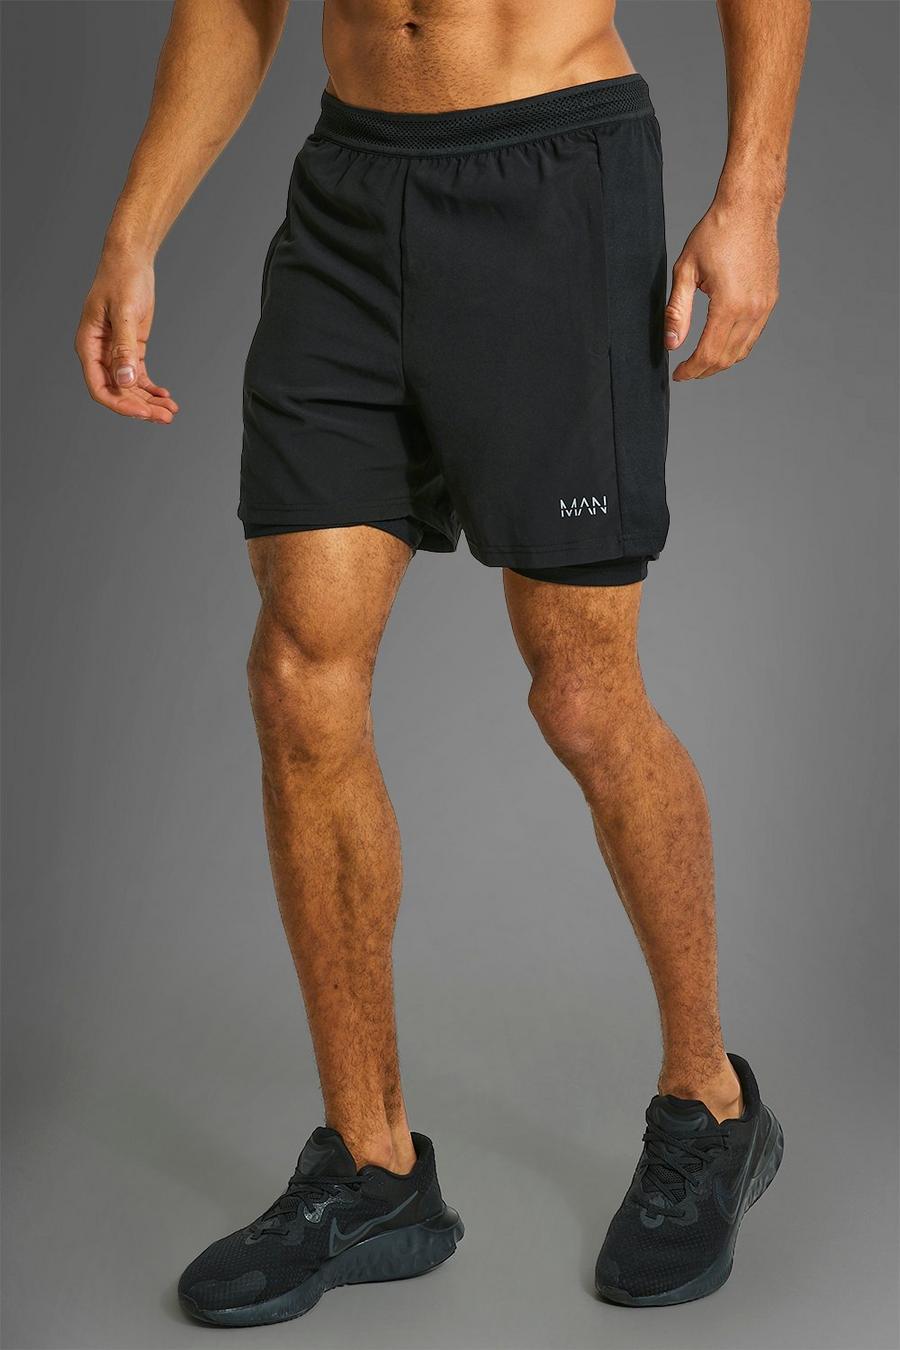 Pantalón corto MAN Active deportivo resistente 2 en 1, Black negro image number 1